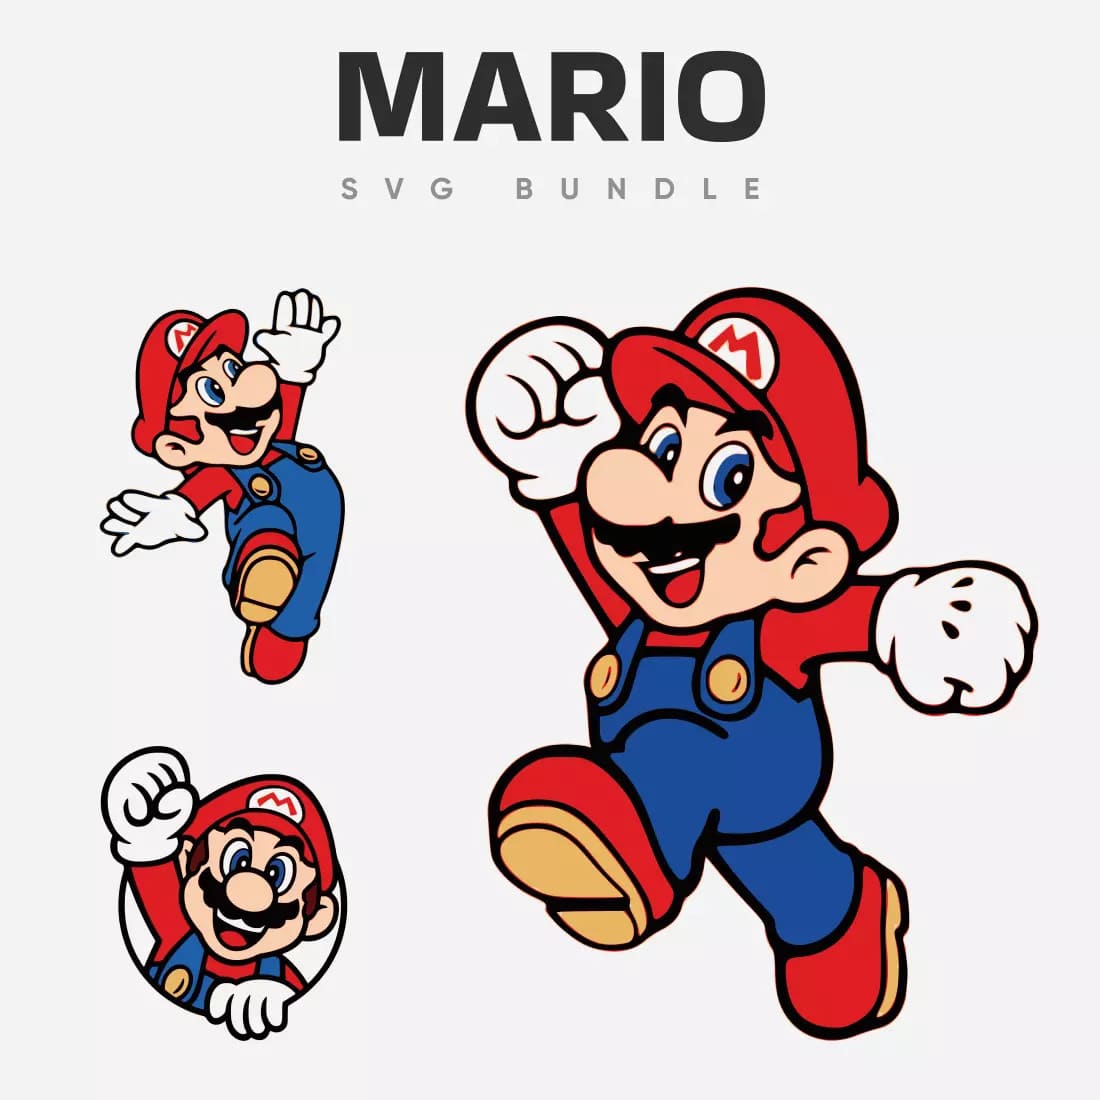 Mario SVG Bundle Preview 1.